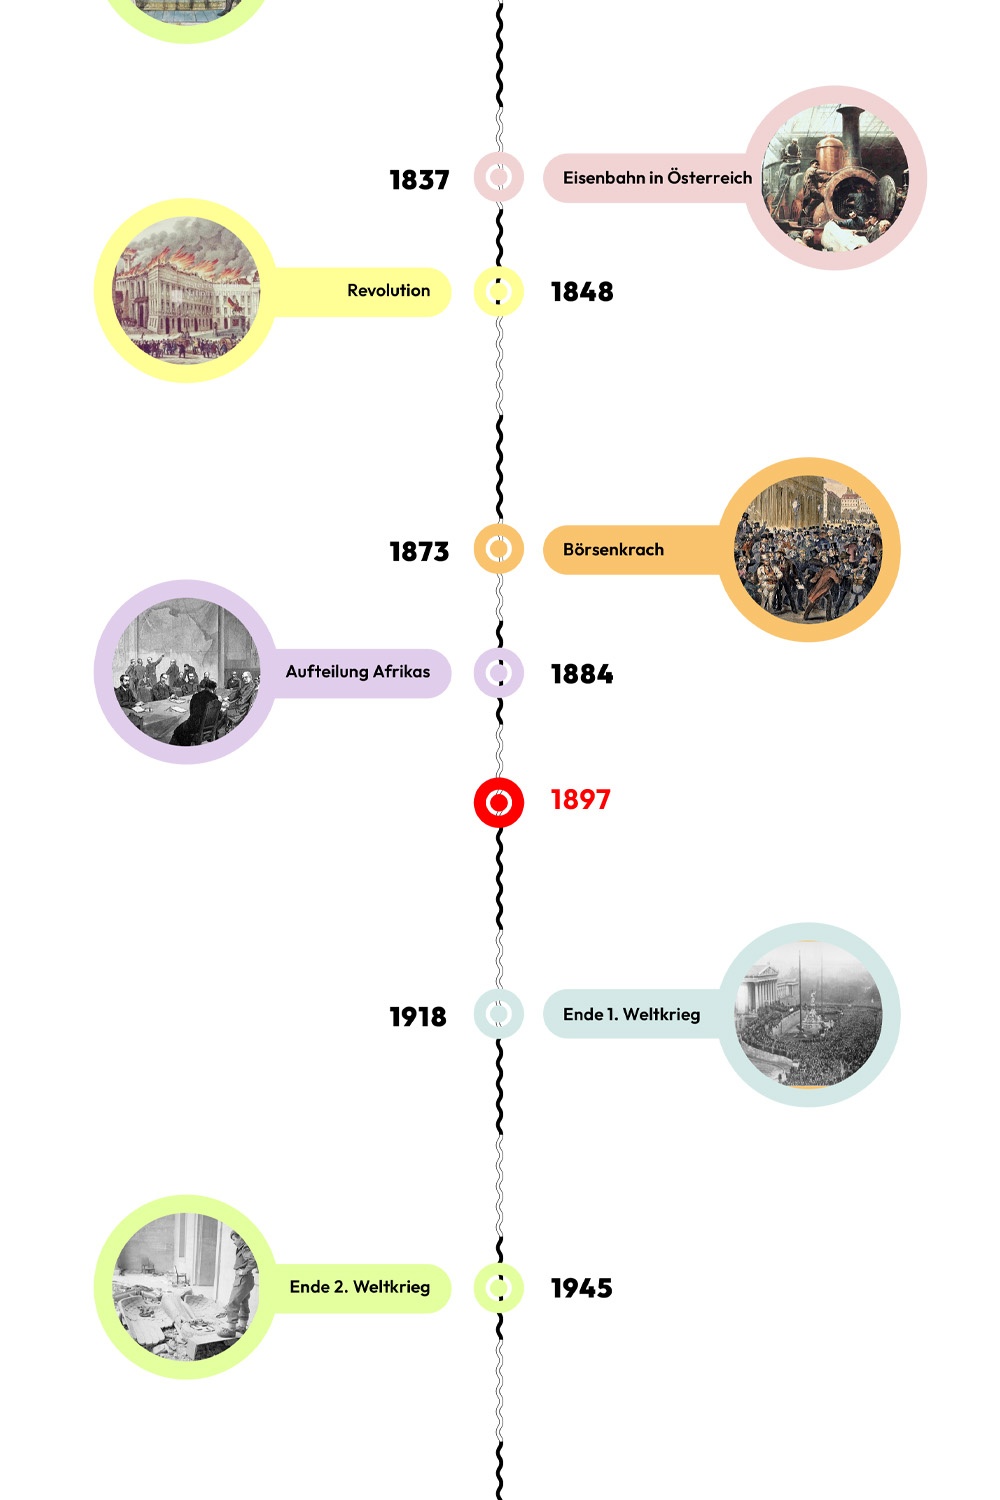 Zeitstrahl mit historischen Ereignissen - 1897 ist hervorgehoben © wasbishergeschah.at